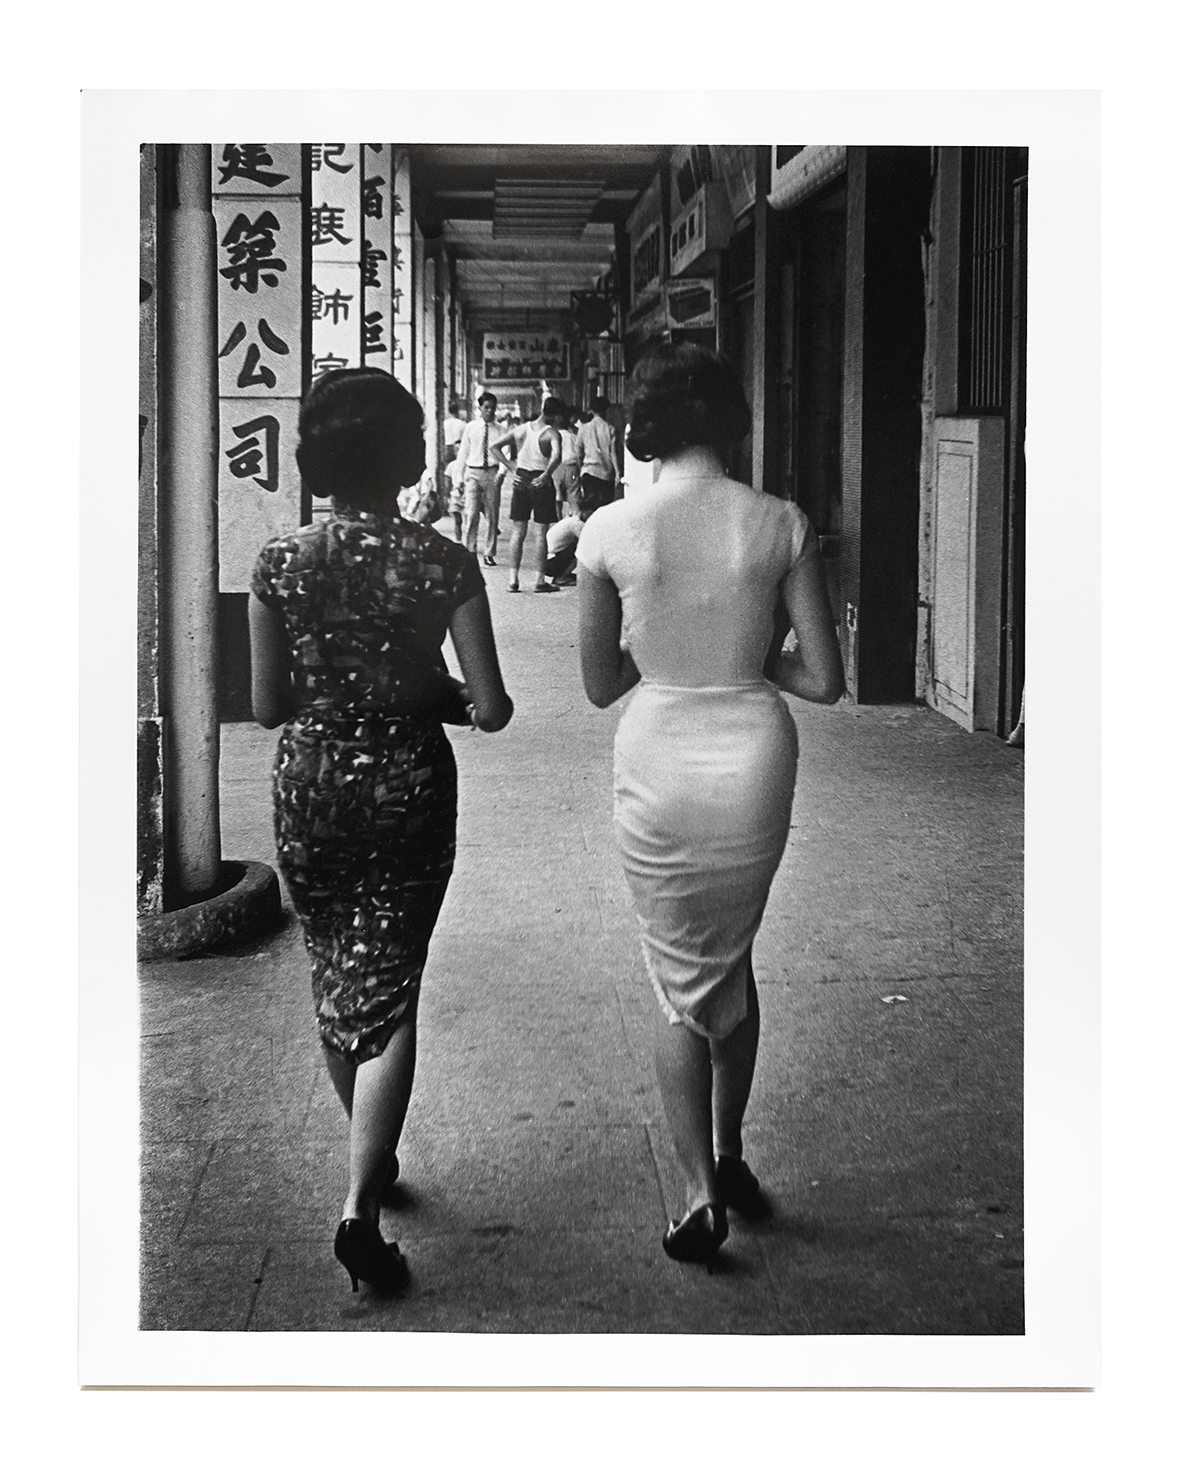 邱良，《儷人行（告士打道）》，香港，1961年 | 刺點畫廊提供